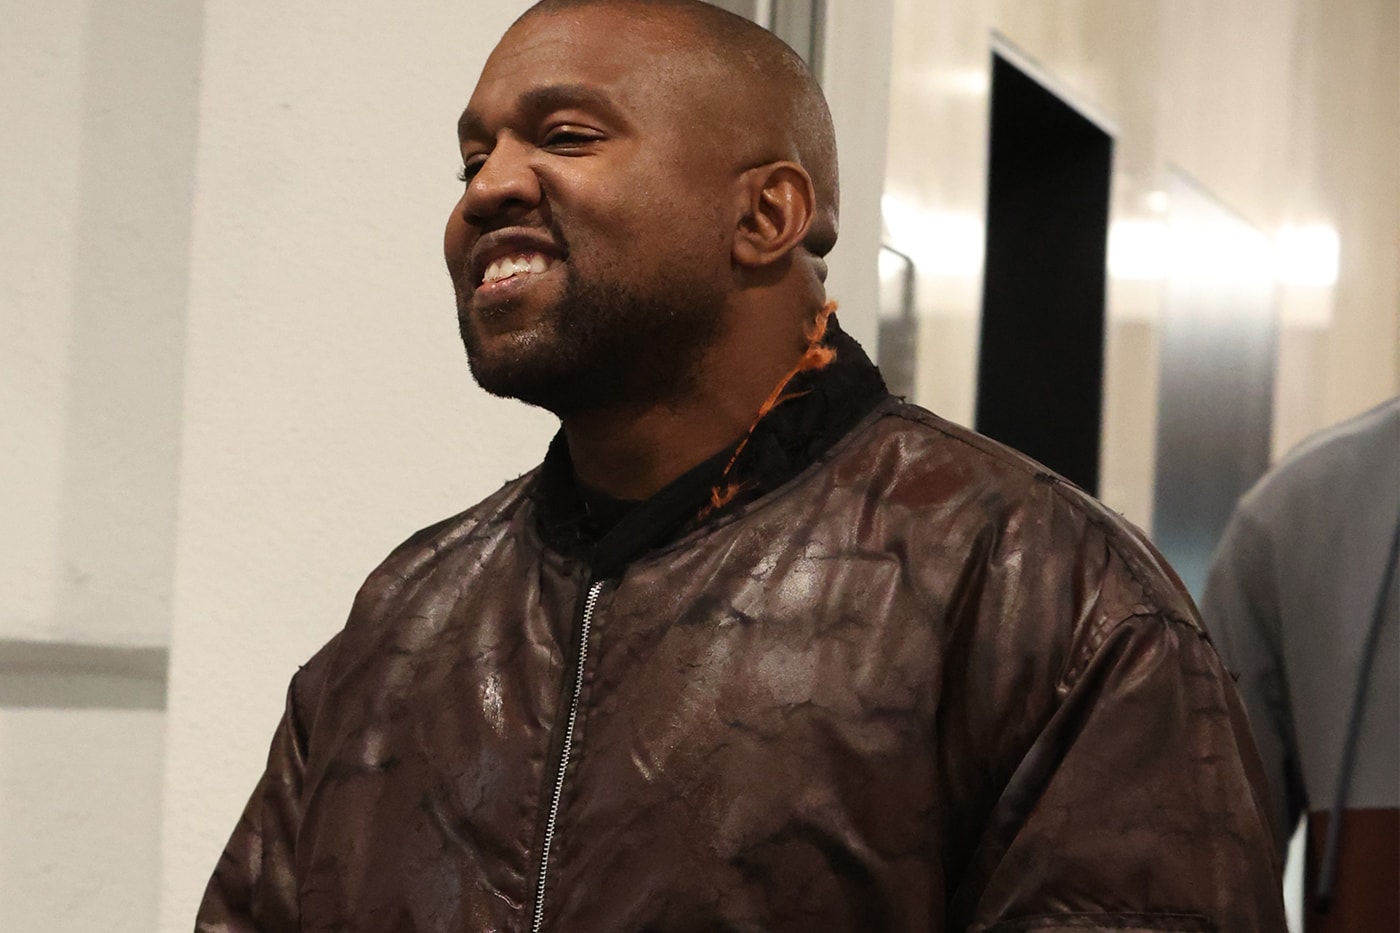 カニエ・ウェストの最新アルバムに関する詳細情報がリークされる Kanye West Rumored New Album Details Info Change Date Release Tracks